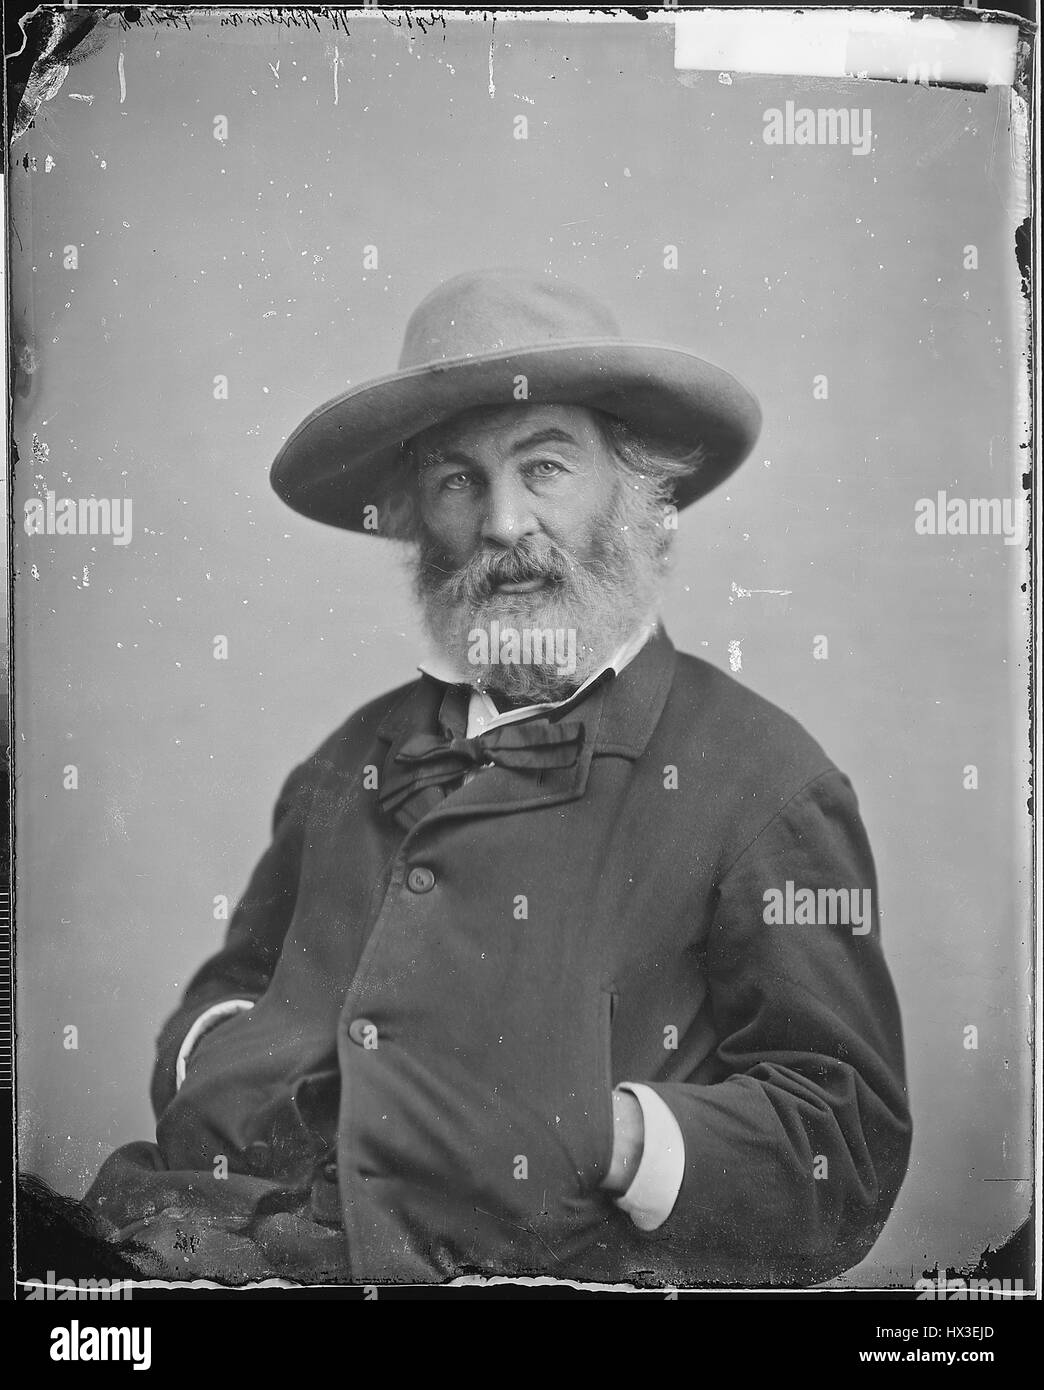 Mezza lunghezza seduto ritratto di eminente scrittore americano Walt Whitman, 1863. Immagine cortesia archivi nazionali. Foto Stock